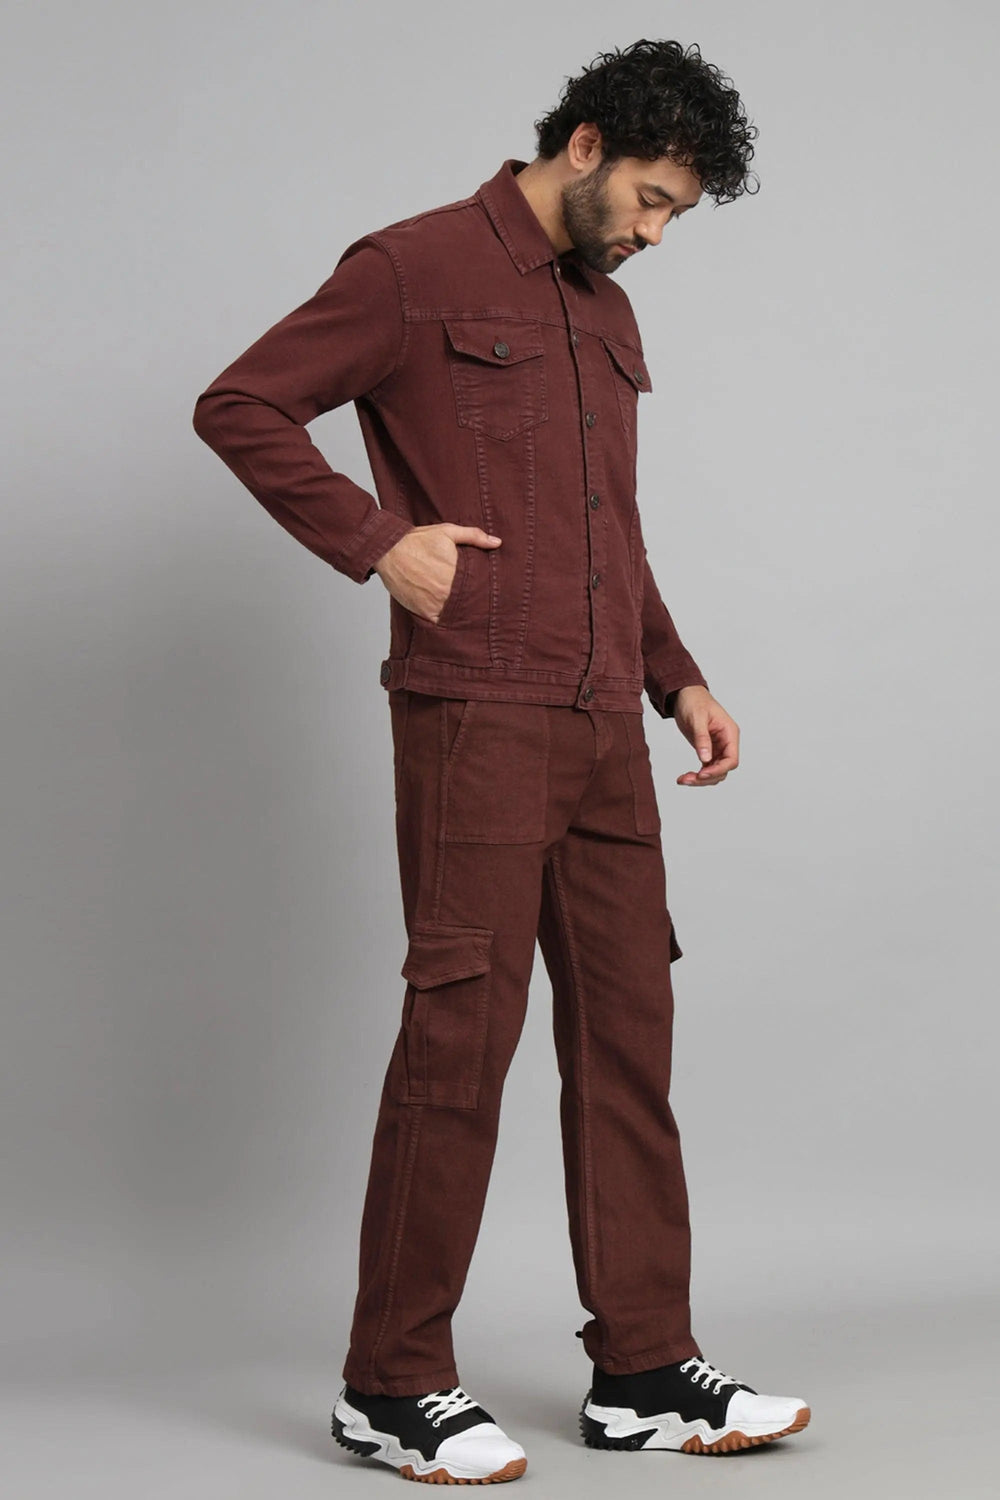 Regular Fit Brown Denim Cargo & Jacket Co-ord Set for Men - Peplos Jeans 